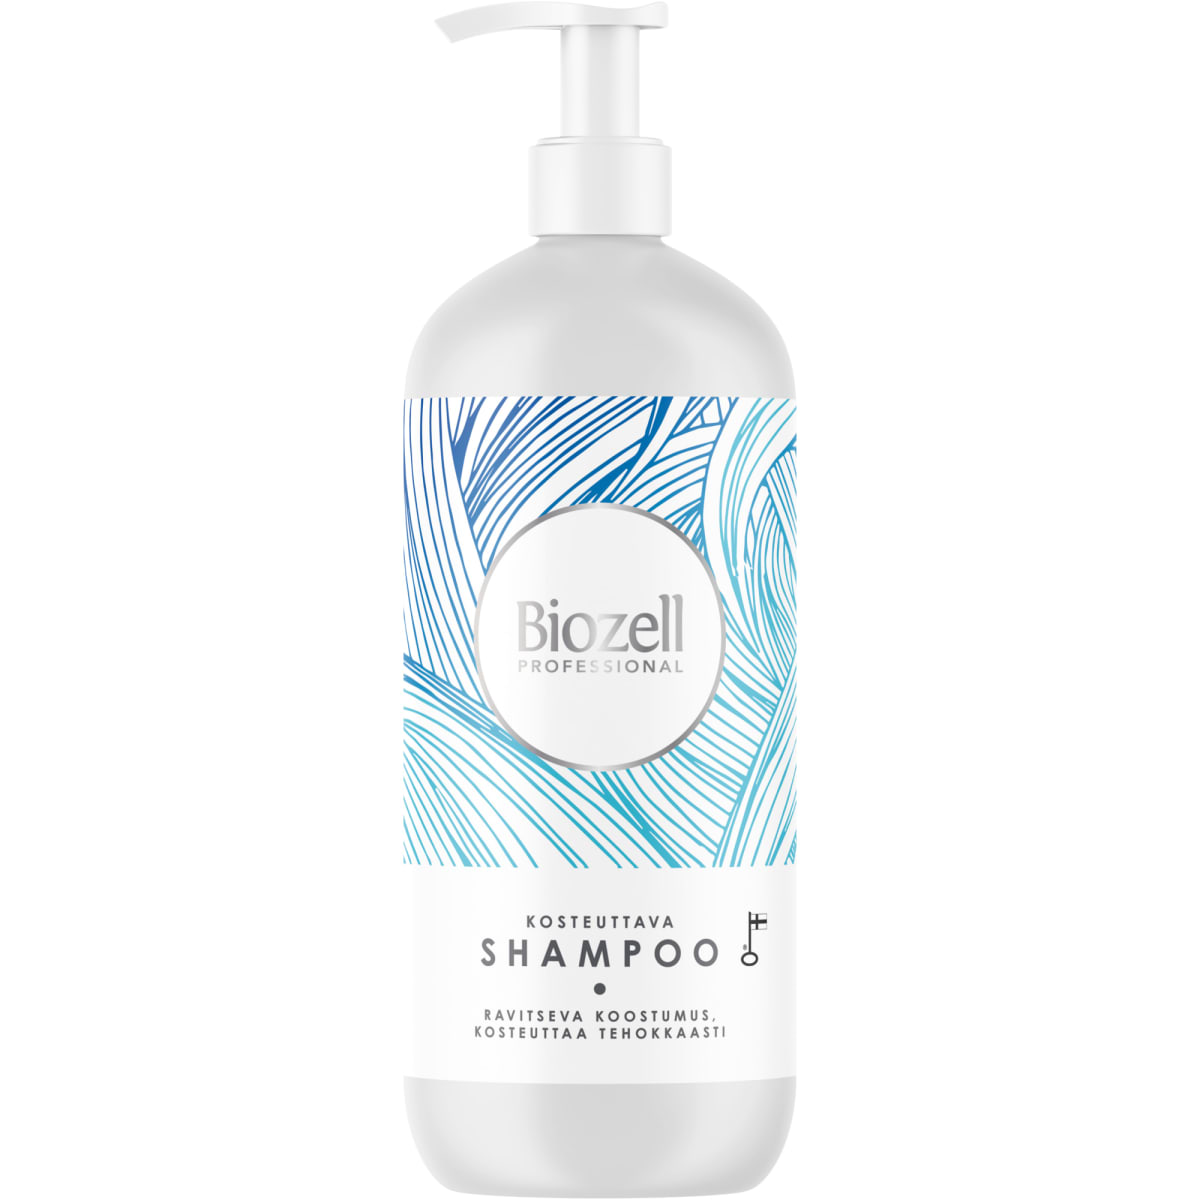 Biozell Professional 500 ml kosteuttava shampoo | Karkkainen.com  verkkokauppa